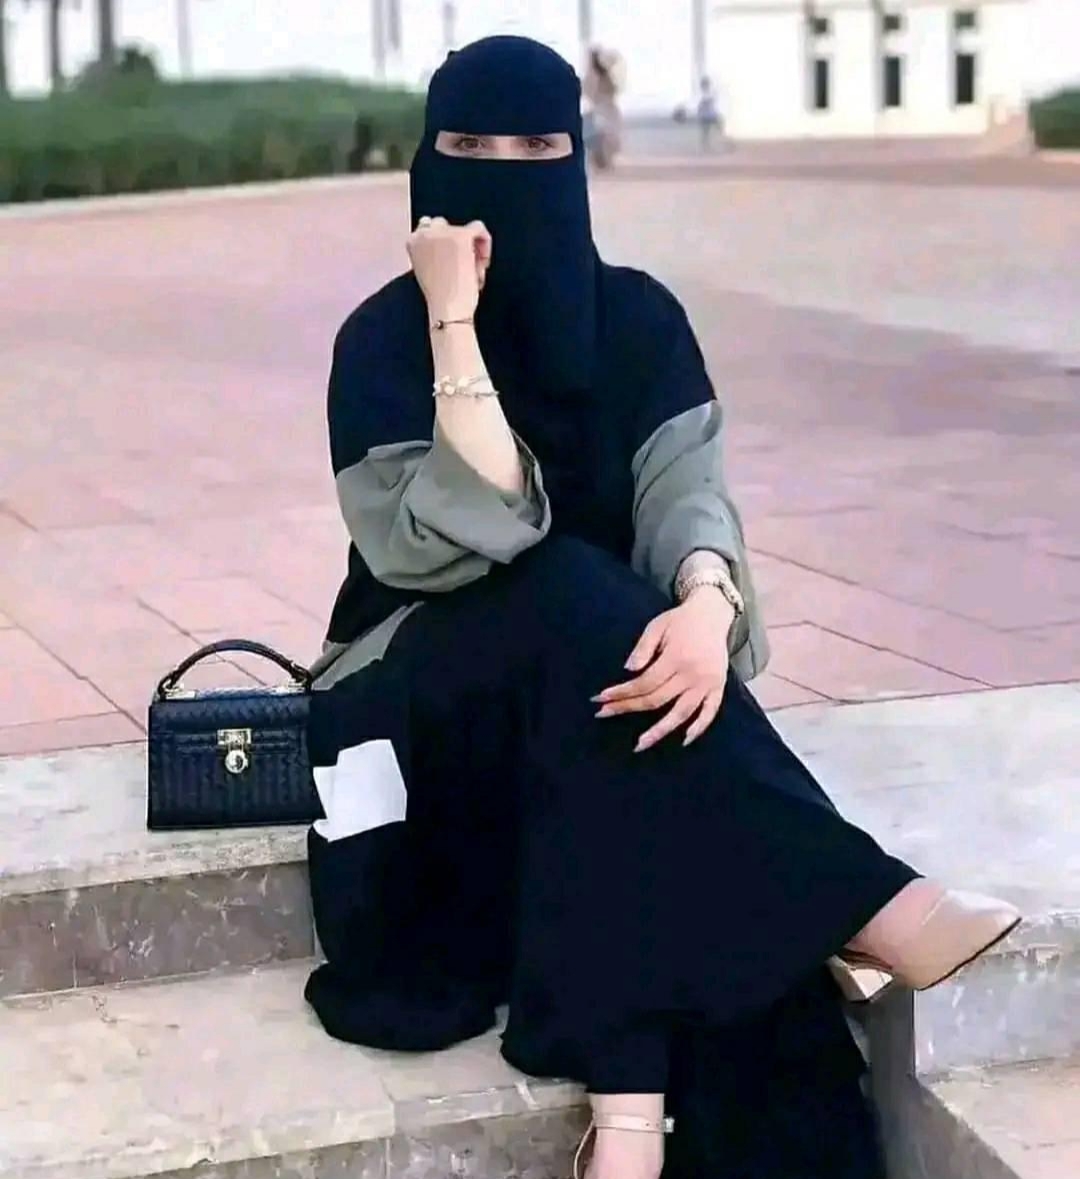 اغرب شرط تضعه الفتاة السعودية للموافقة على العريس المتقدم لها 